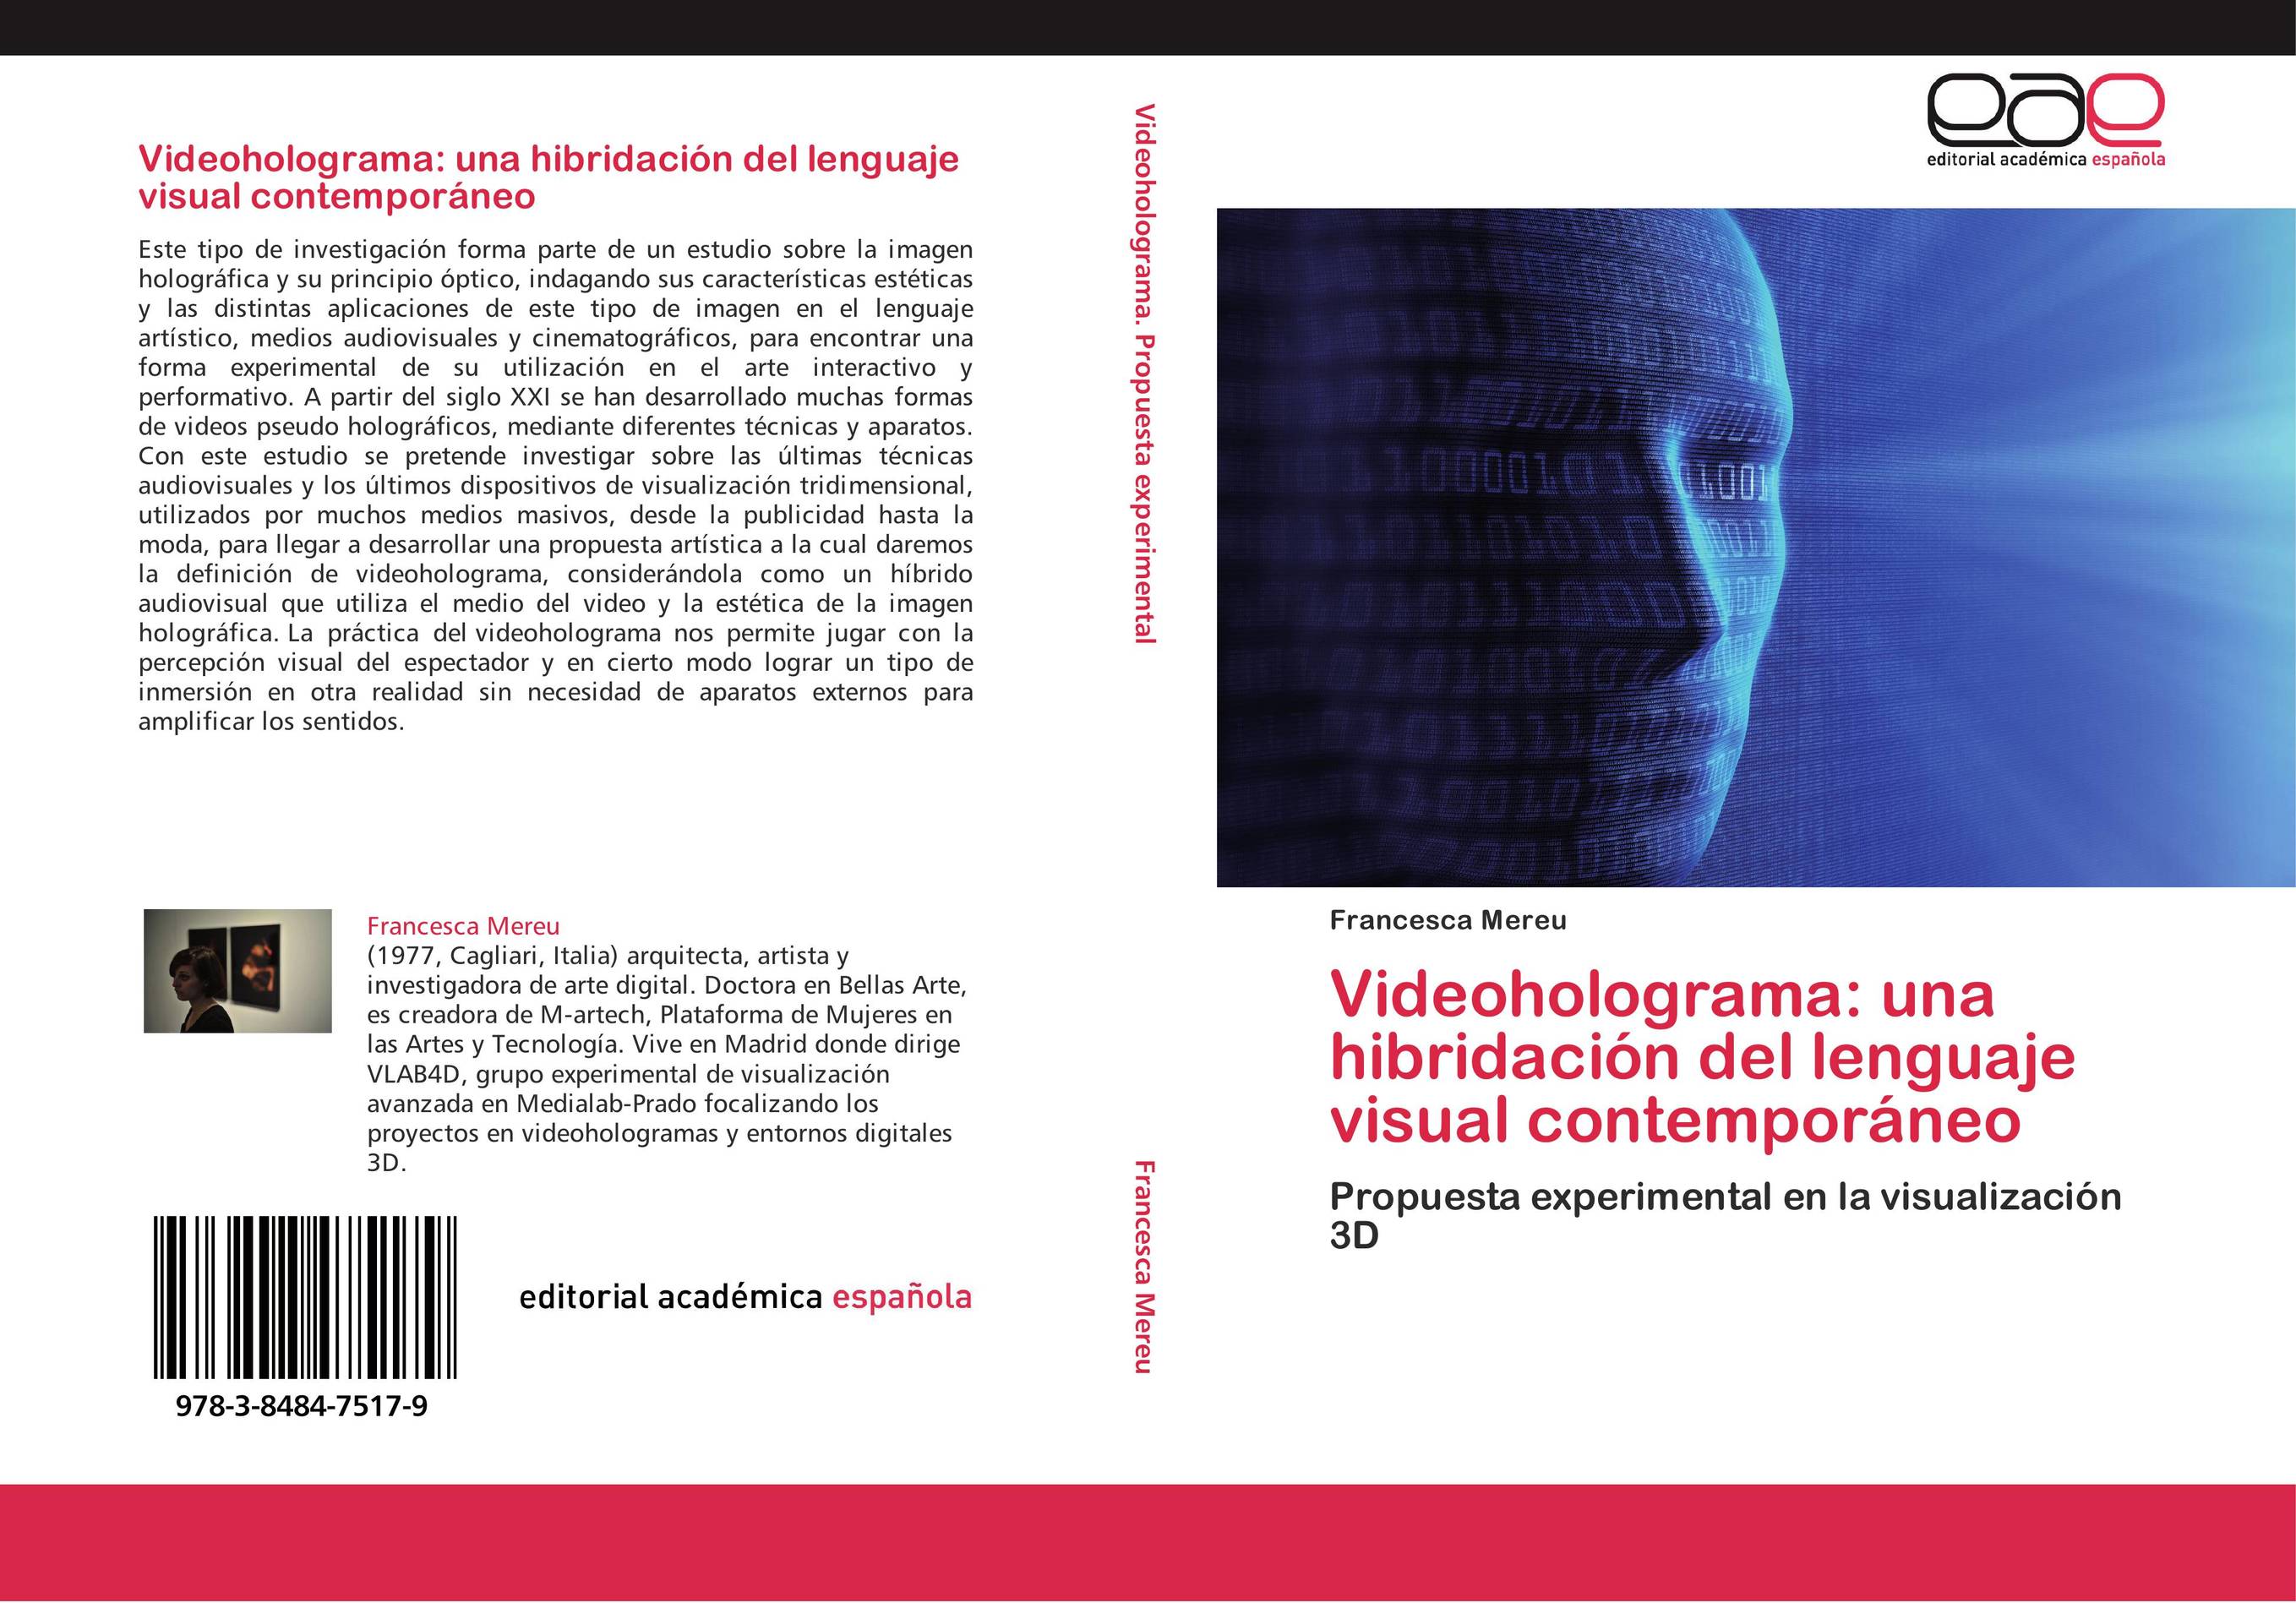 Videoholograma: una hibridación del lenguaje visual contemporáneo